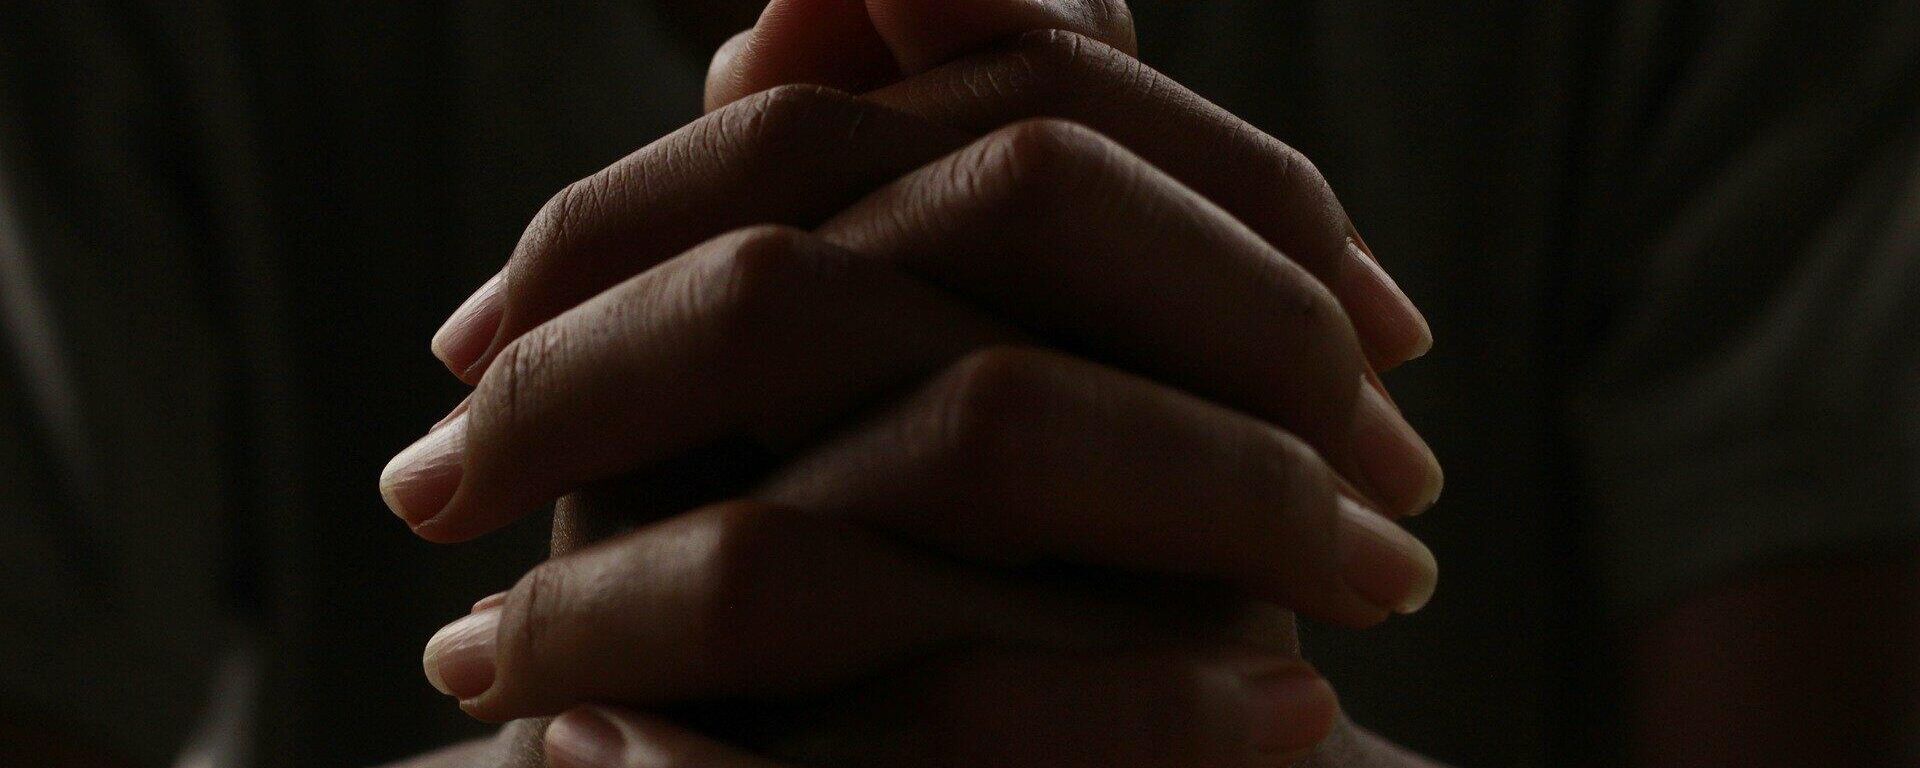 Una persona rezando con las manos entrelazadas - Sputnik Mundo, 1920, 03.03.2021